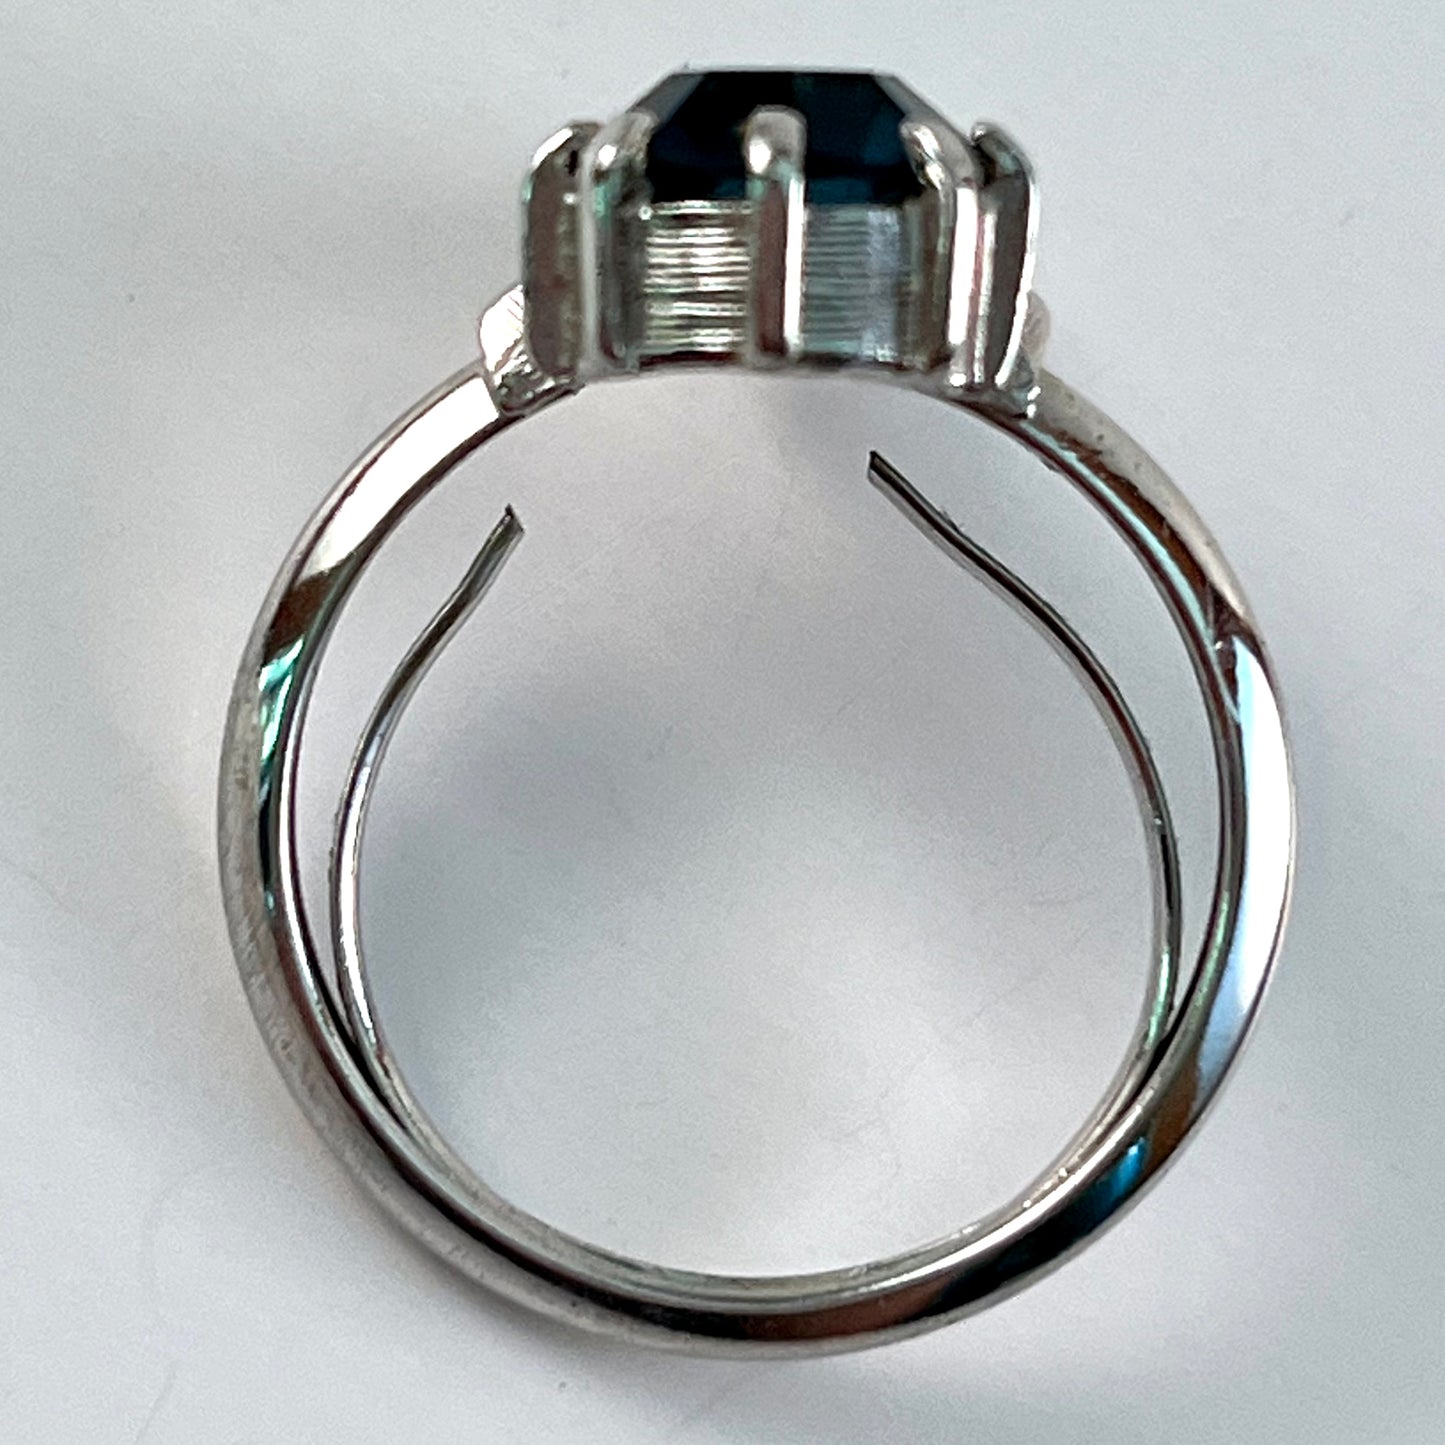 1975 Avon Indiglow Ring